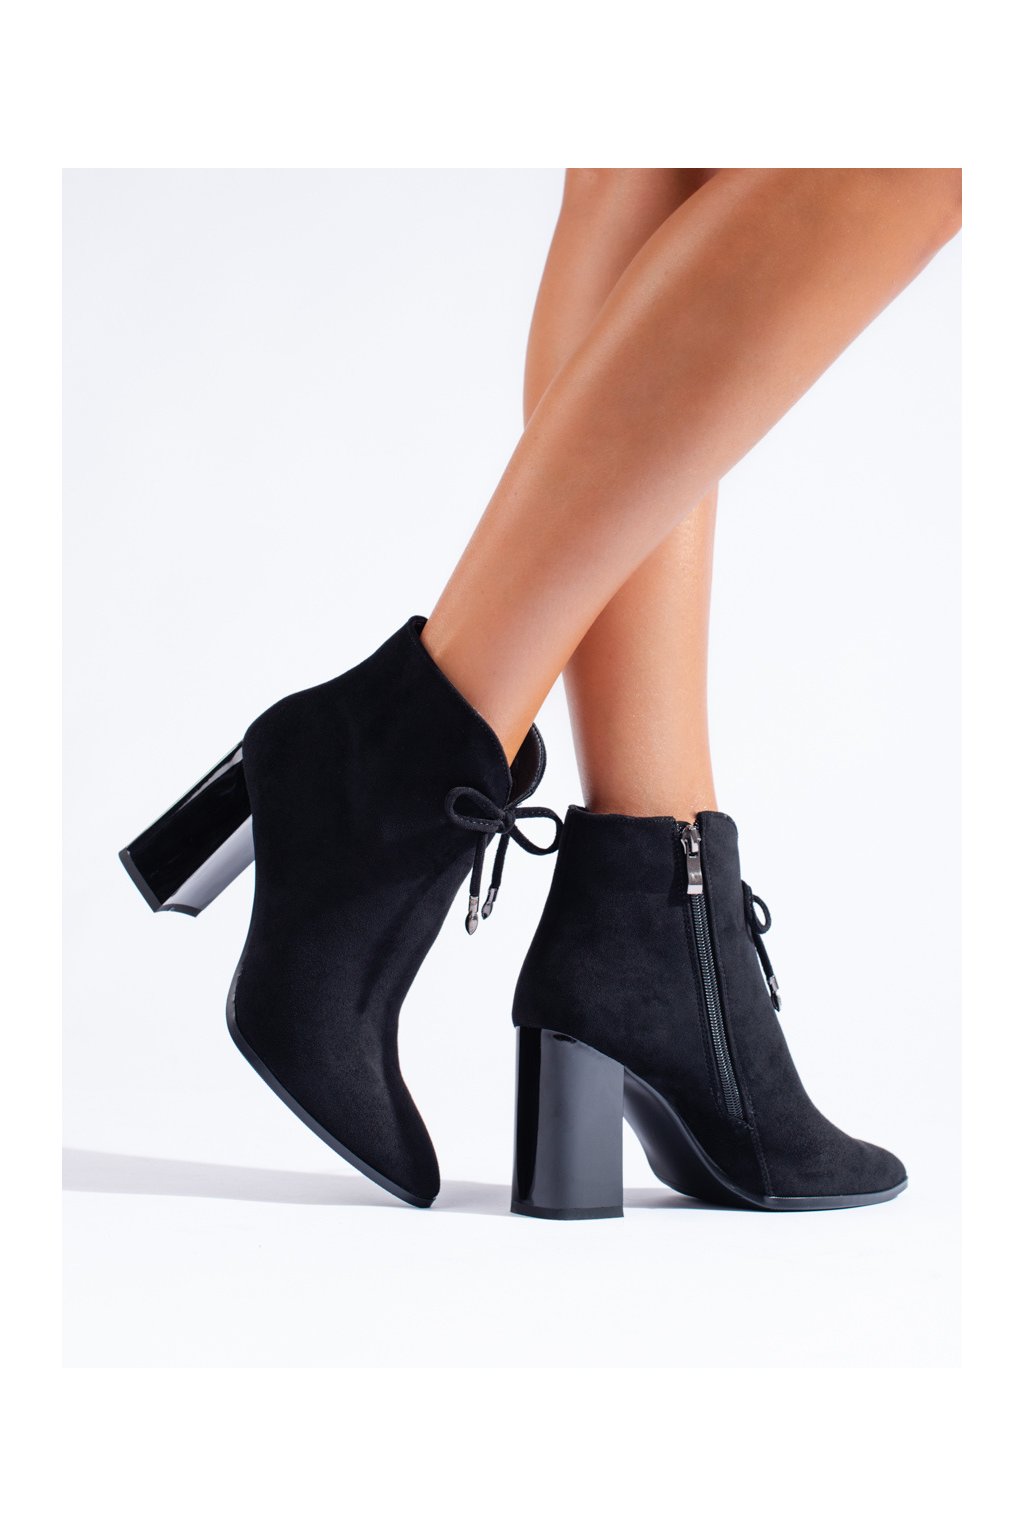 Čierne dámske členkové topánky na hrubom podpätku Shelovet kod GD-FL2022B/B  teraz len 45 € ✓